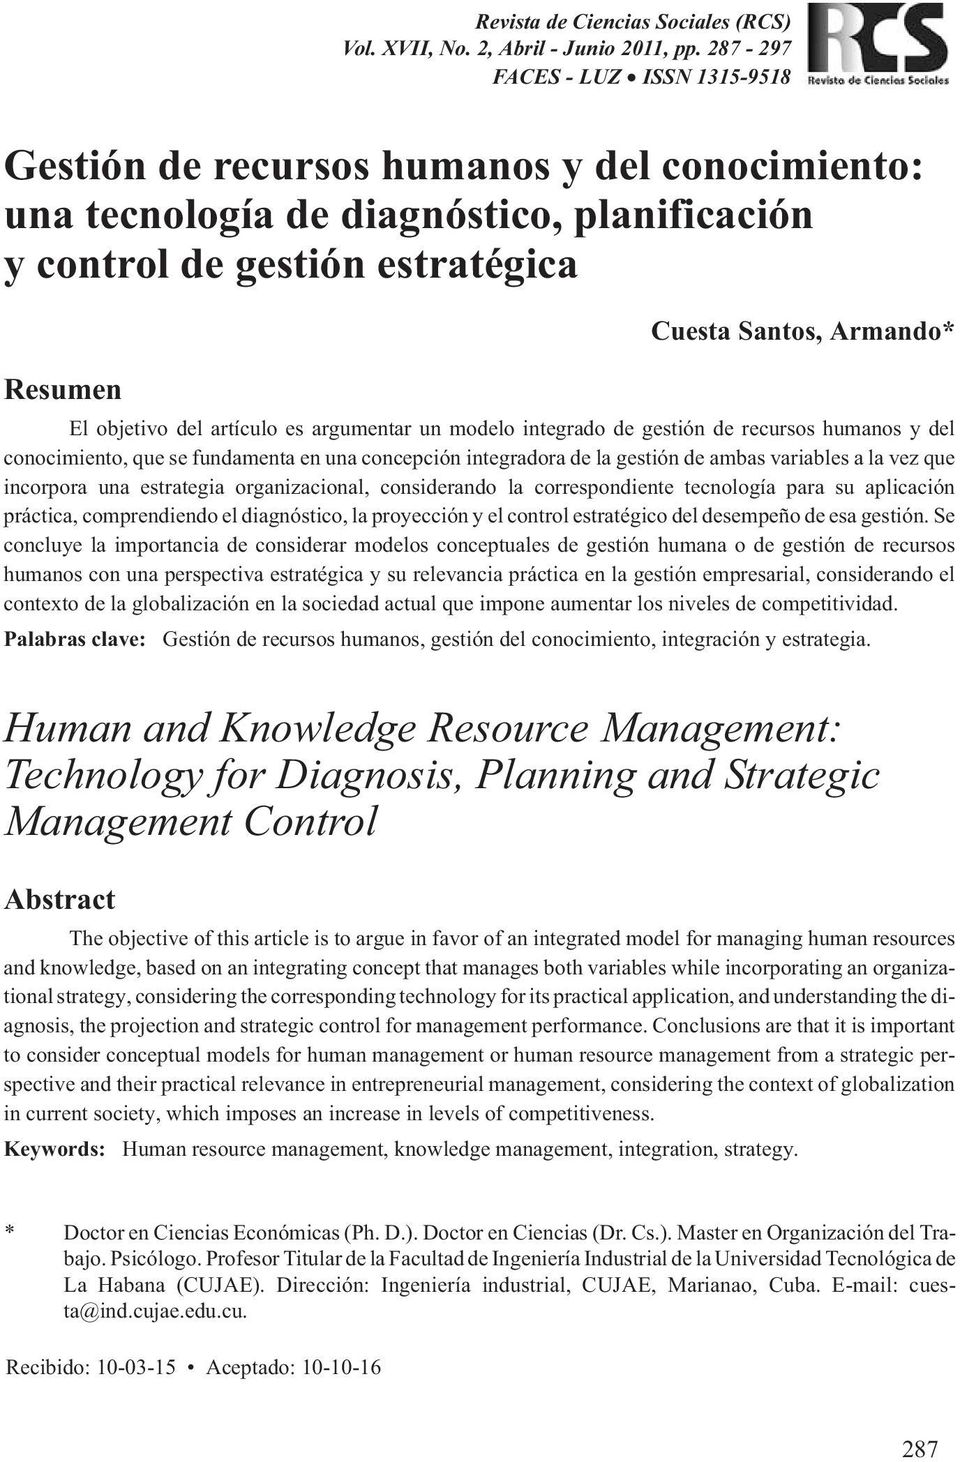 objetivo del artículo es argumentar un modelo integrado de gestión de recursos humanos y del conocimiento, que se fundamenta en una concepción integradora de la gestión de ambas variables a la vez